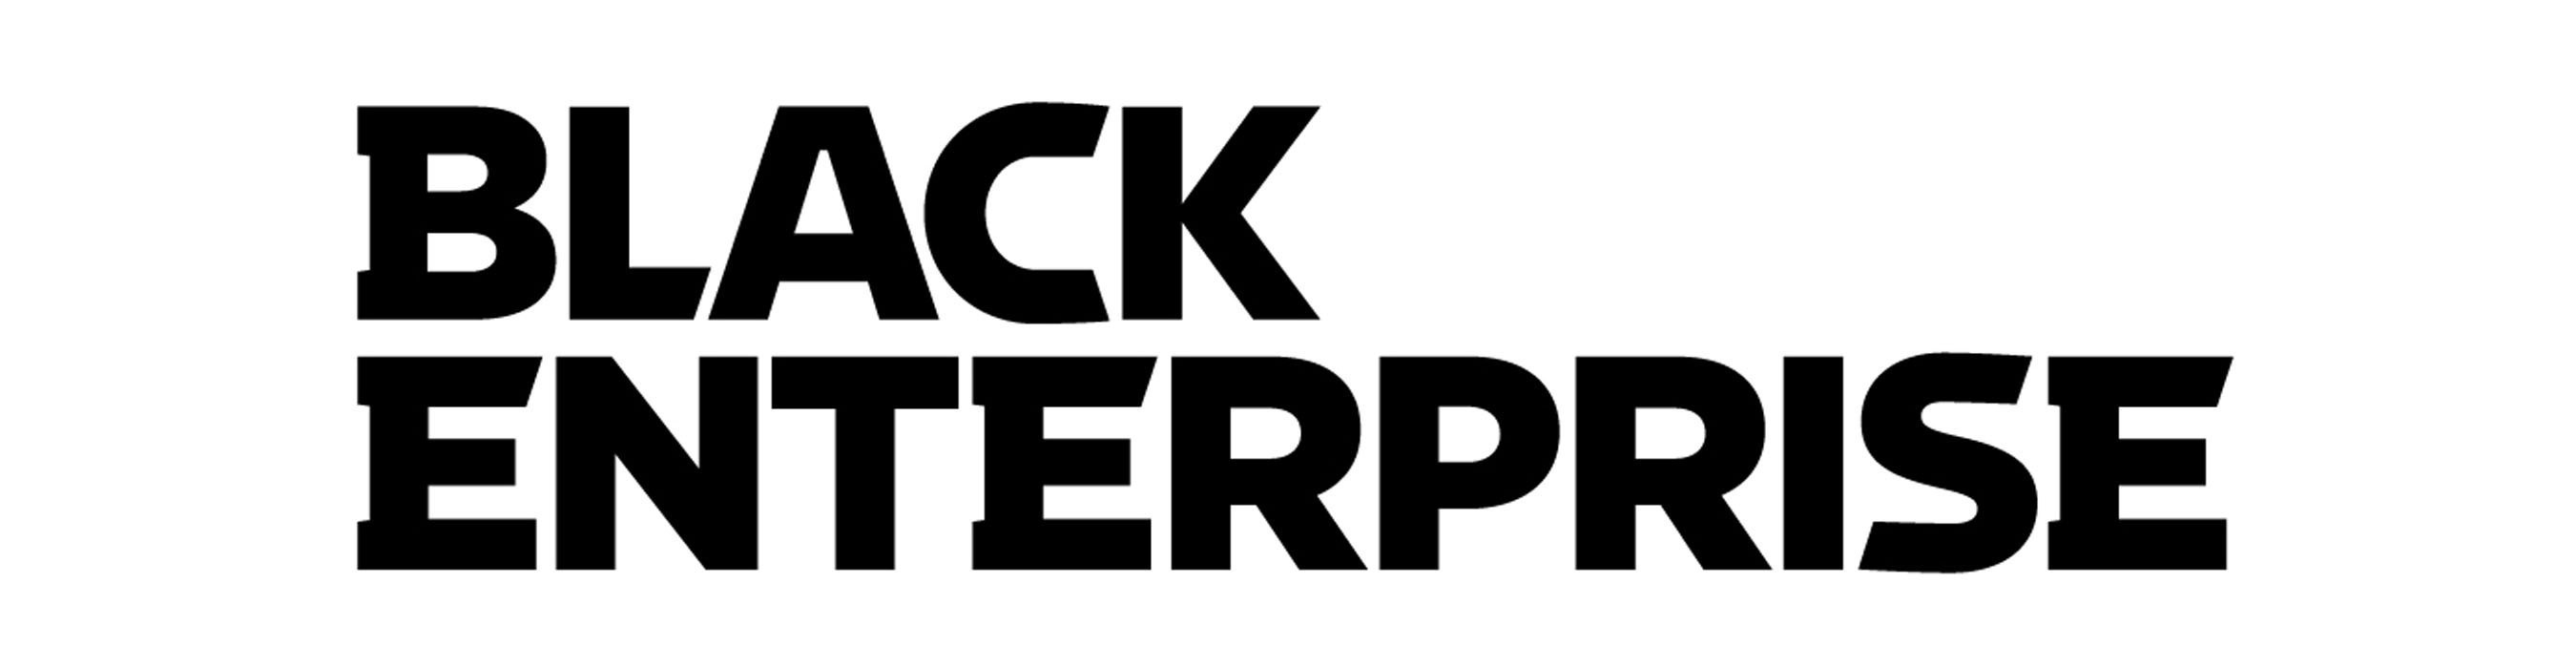 Black Enterprise Logo photo - 1